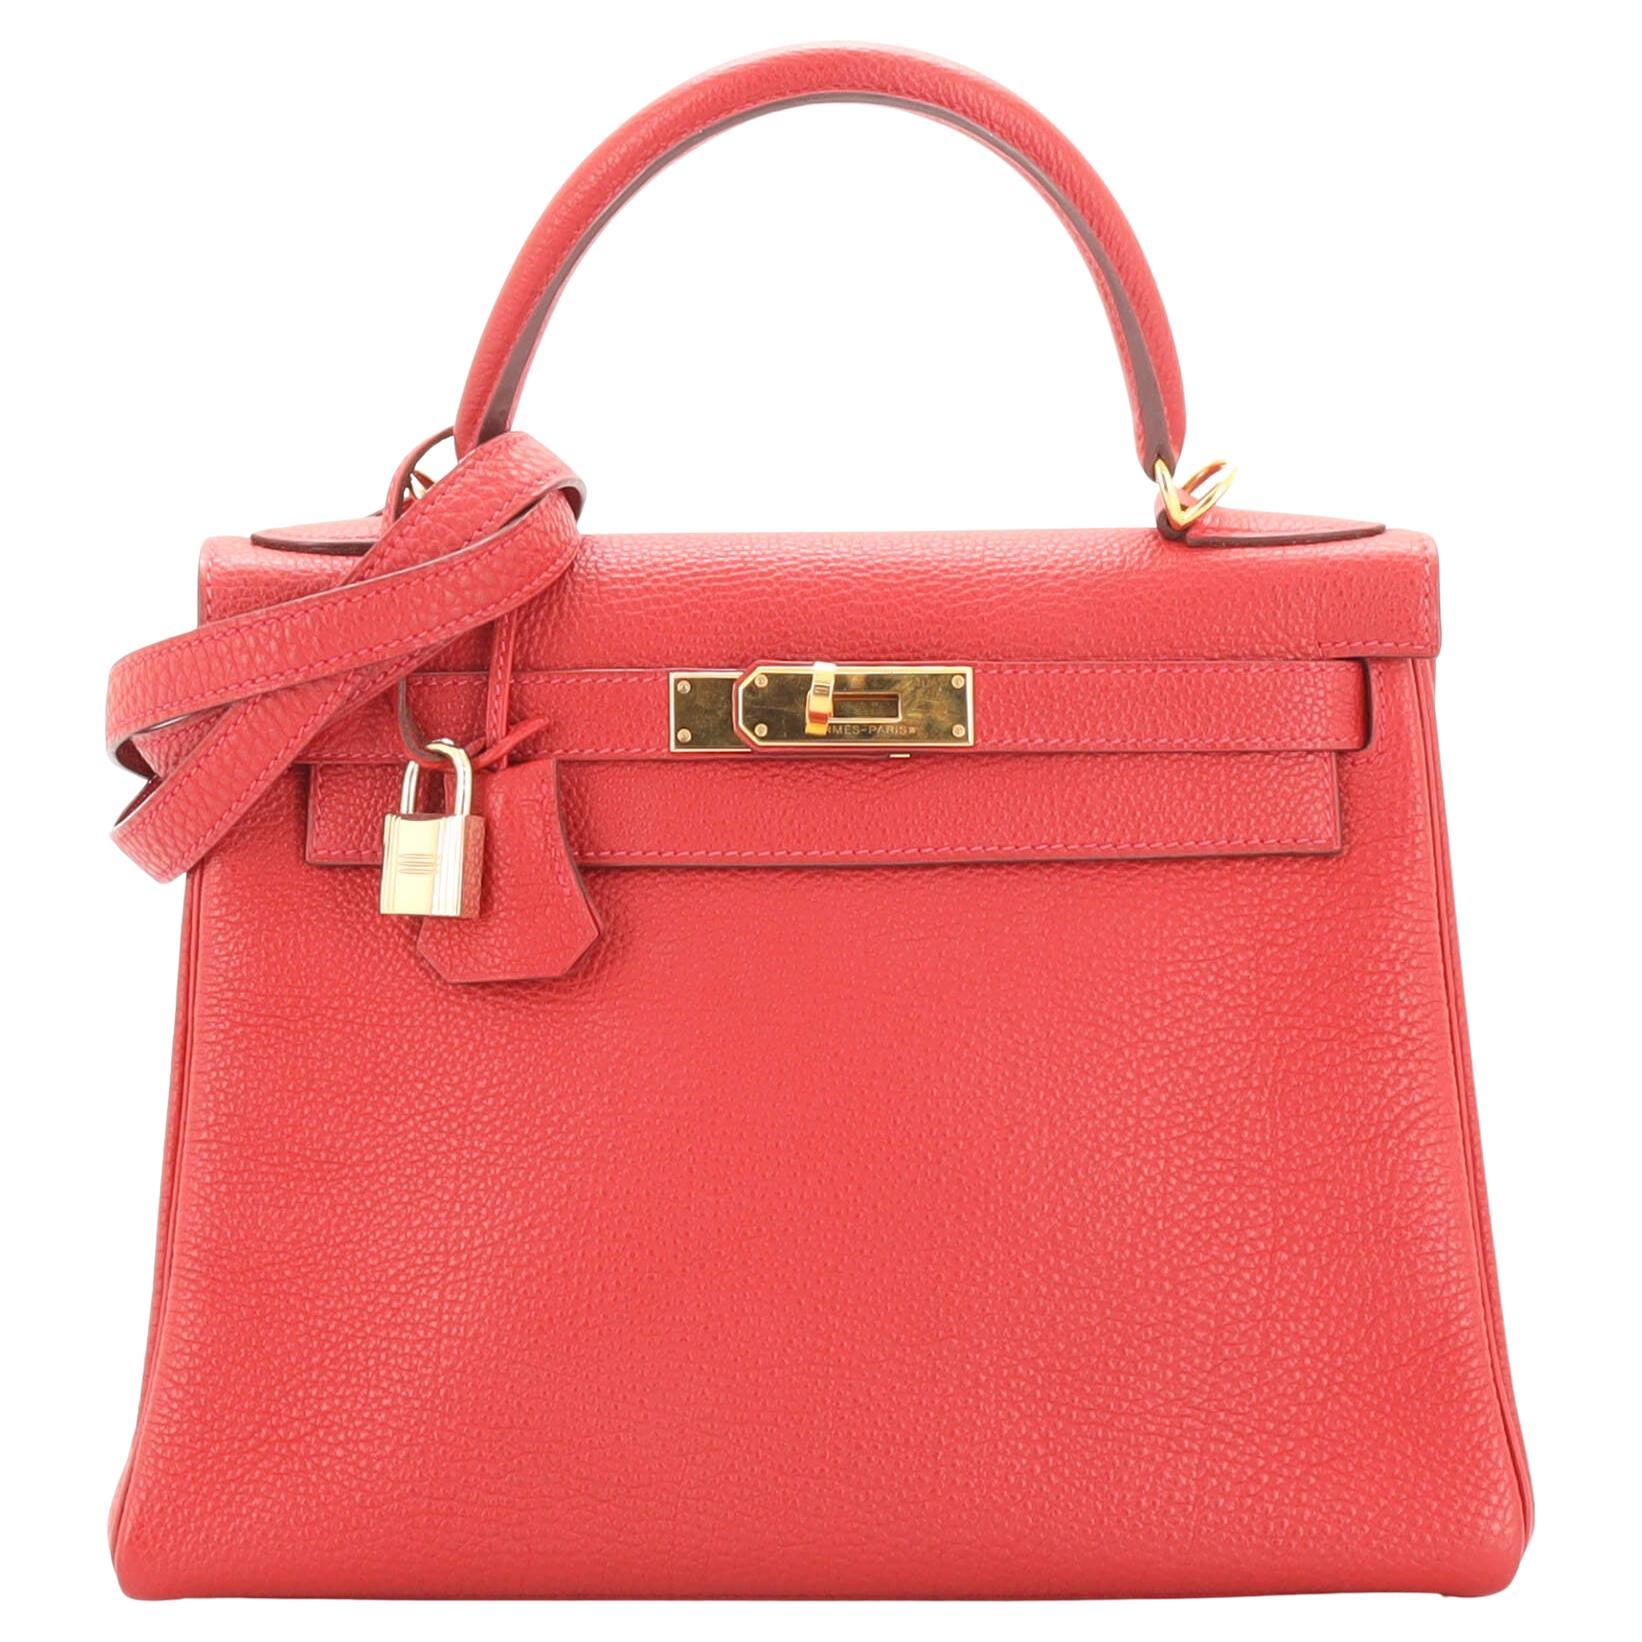 Hermes Kelly Handbag Rouge Vif Togo with Gold Hardware 28